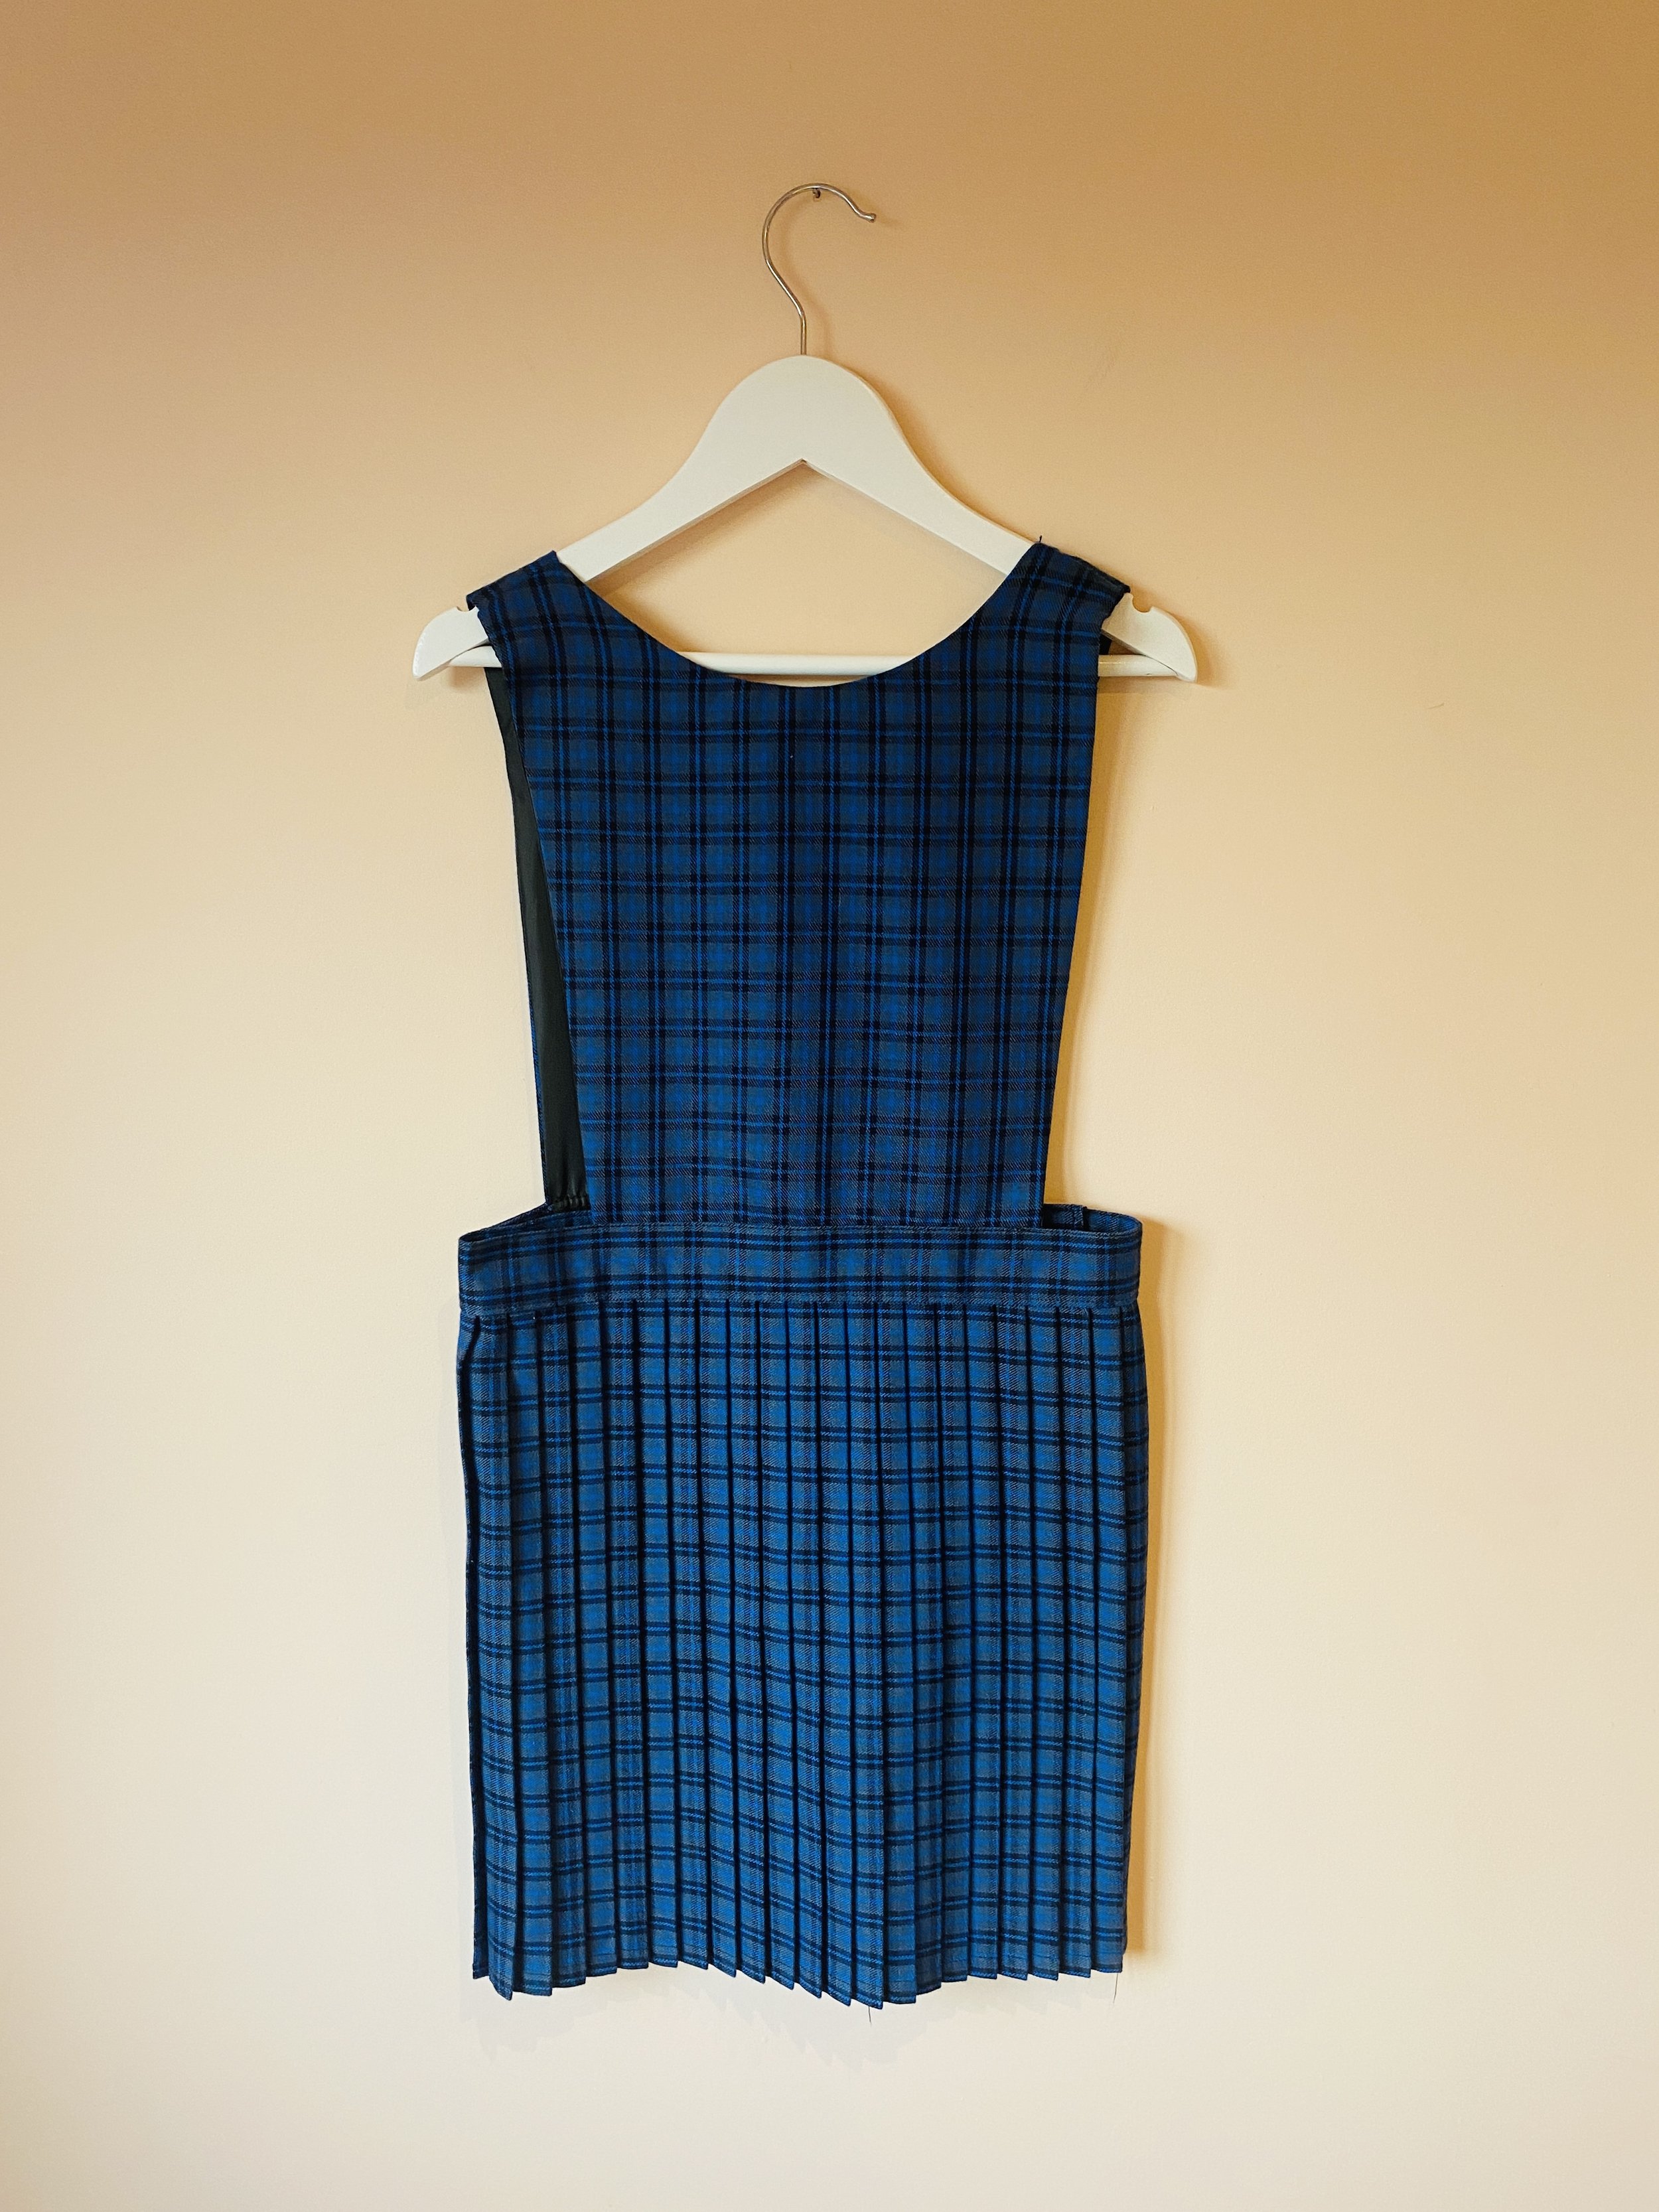 Pinafore Dress, Sleeveless | Plaid dress vintage, Sleeveless linen dress,  Tartan dress